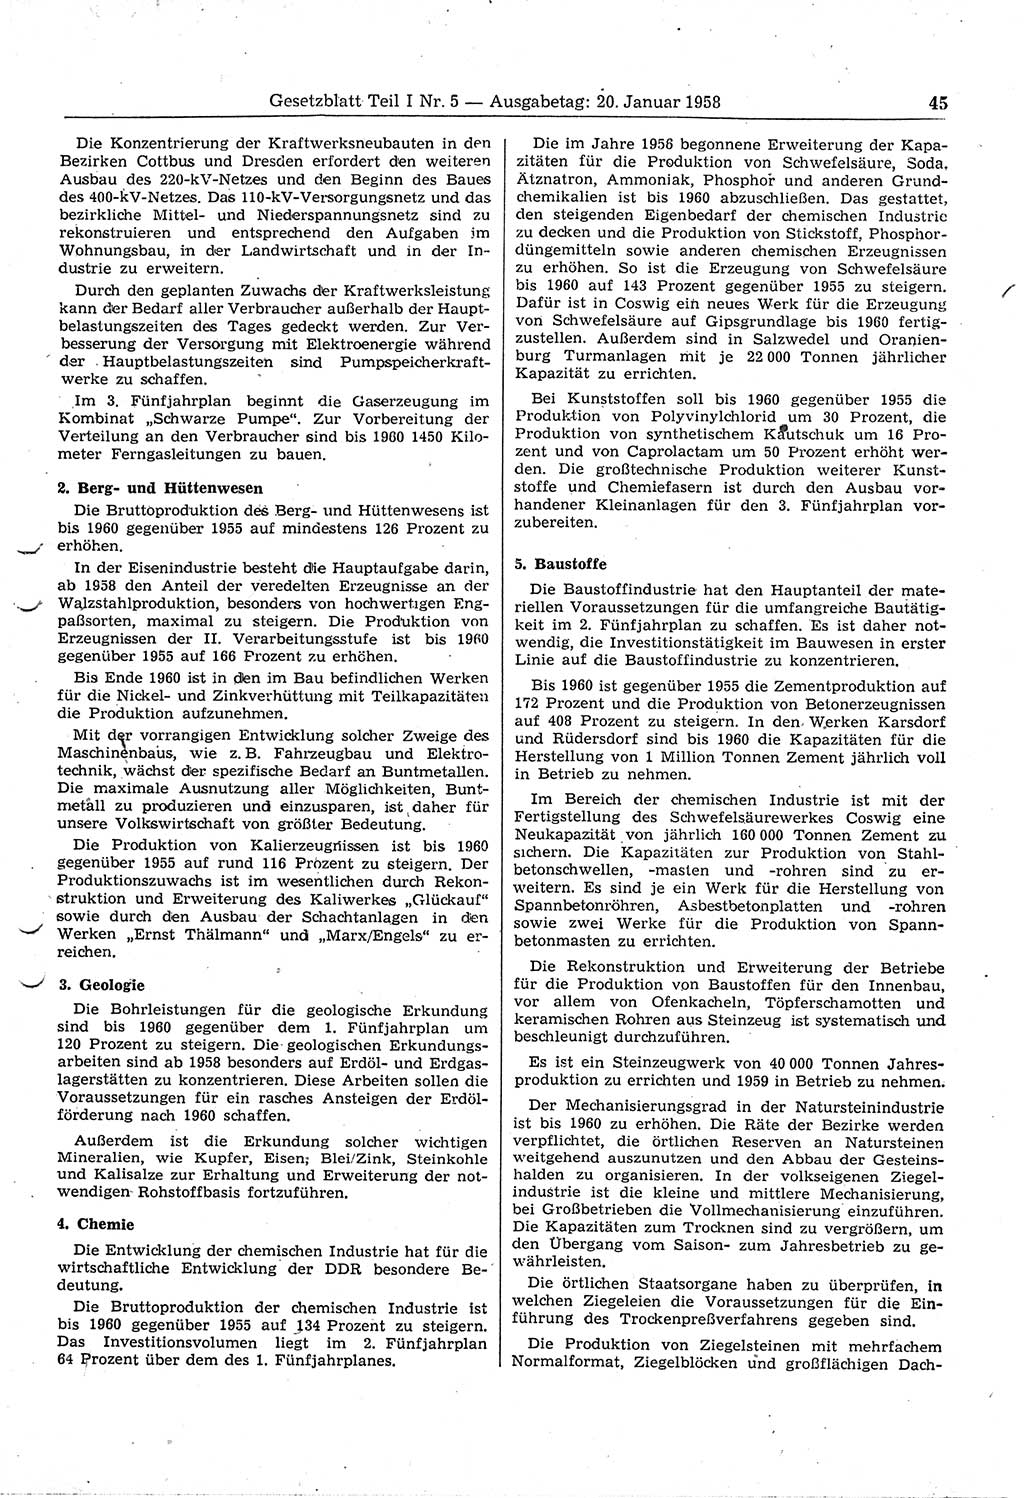 Gesetzblatt (GBl.) der Deutschen Demokratischen Republik (DDR) Teil Ⅰ 1958, Seite 45 (GBl. DDR Ⅰ 1958, S. 45)